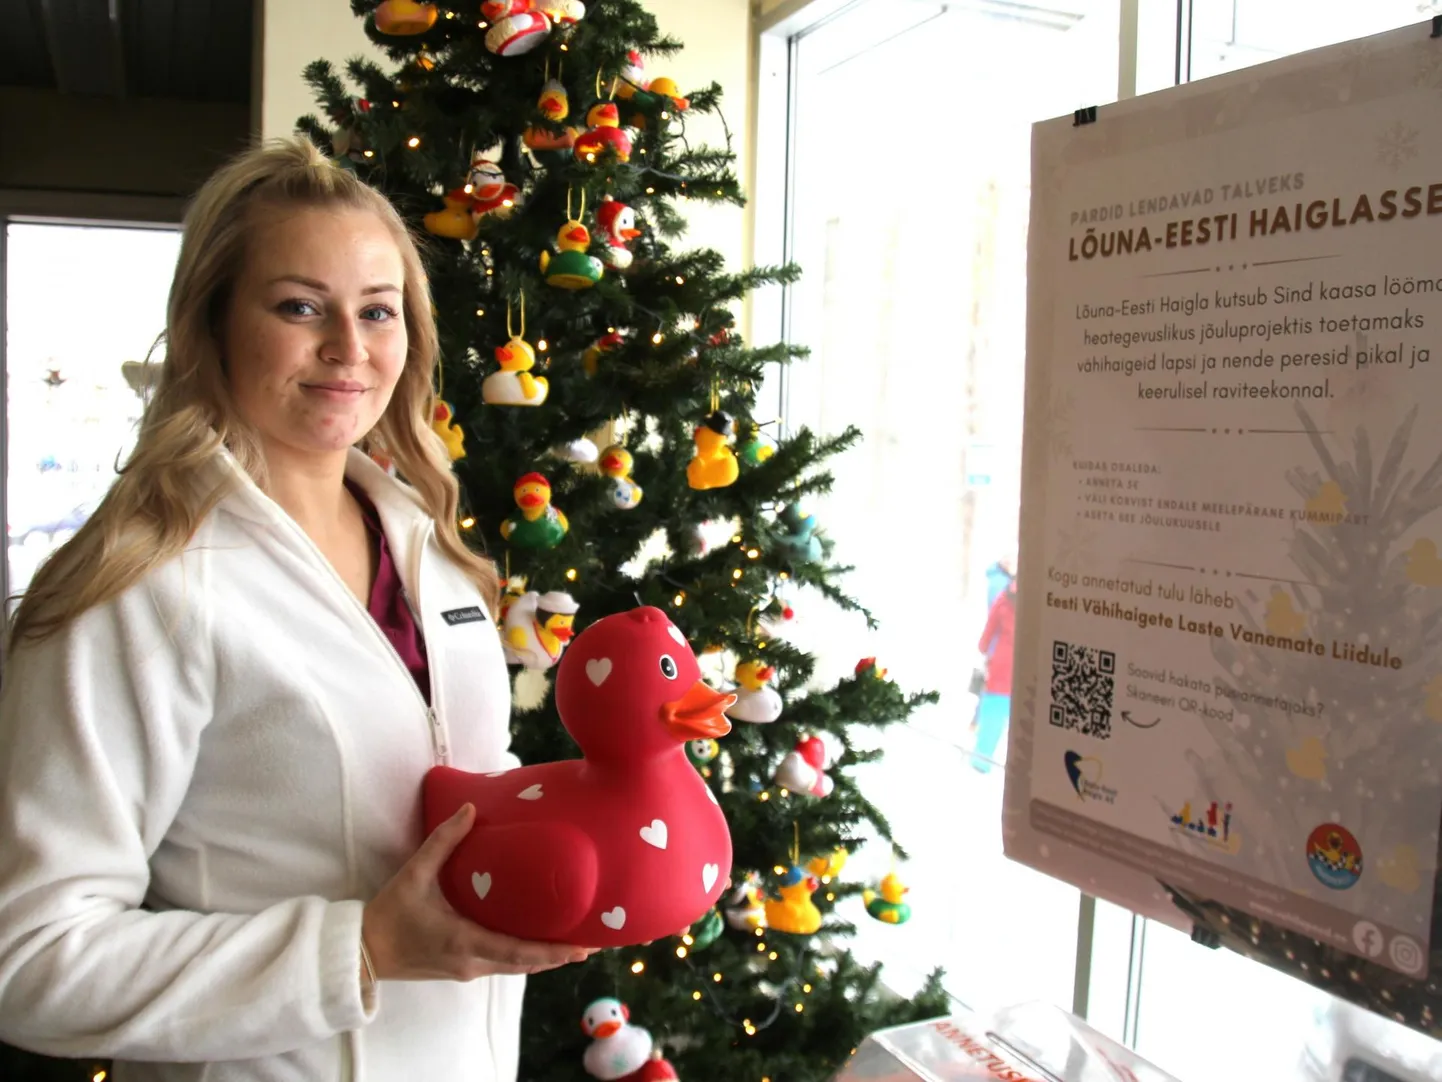 Lõuna-Eesti haigla abiarst Kris-Marii Jaansonile andis heategevusprojekti algatamiseks inspiratsiooni vabatahtlik töö Eesti vähihaigete laste vanemate liidus.